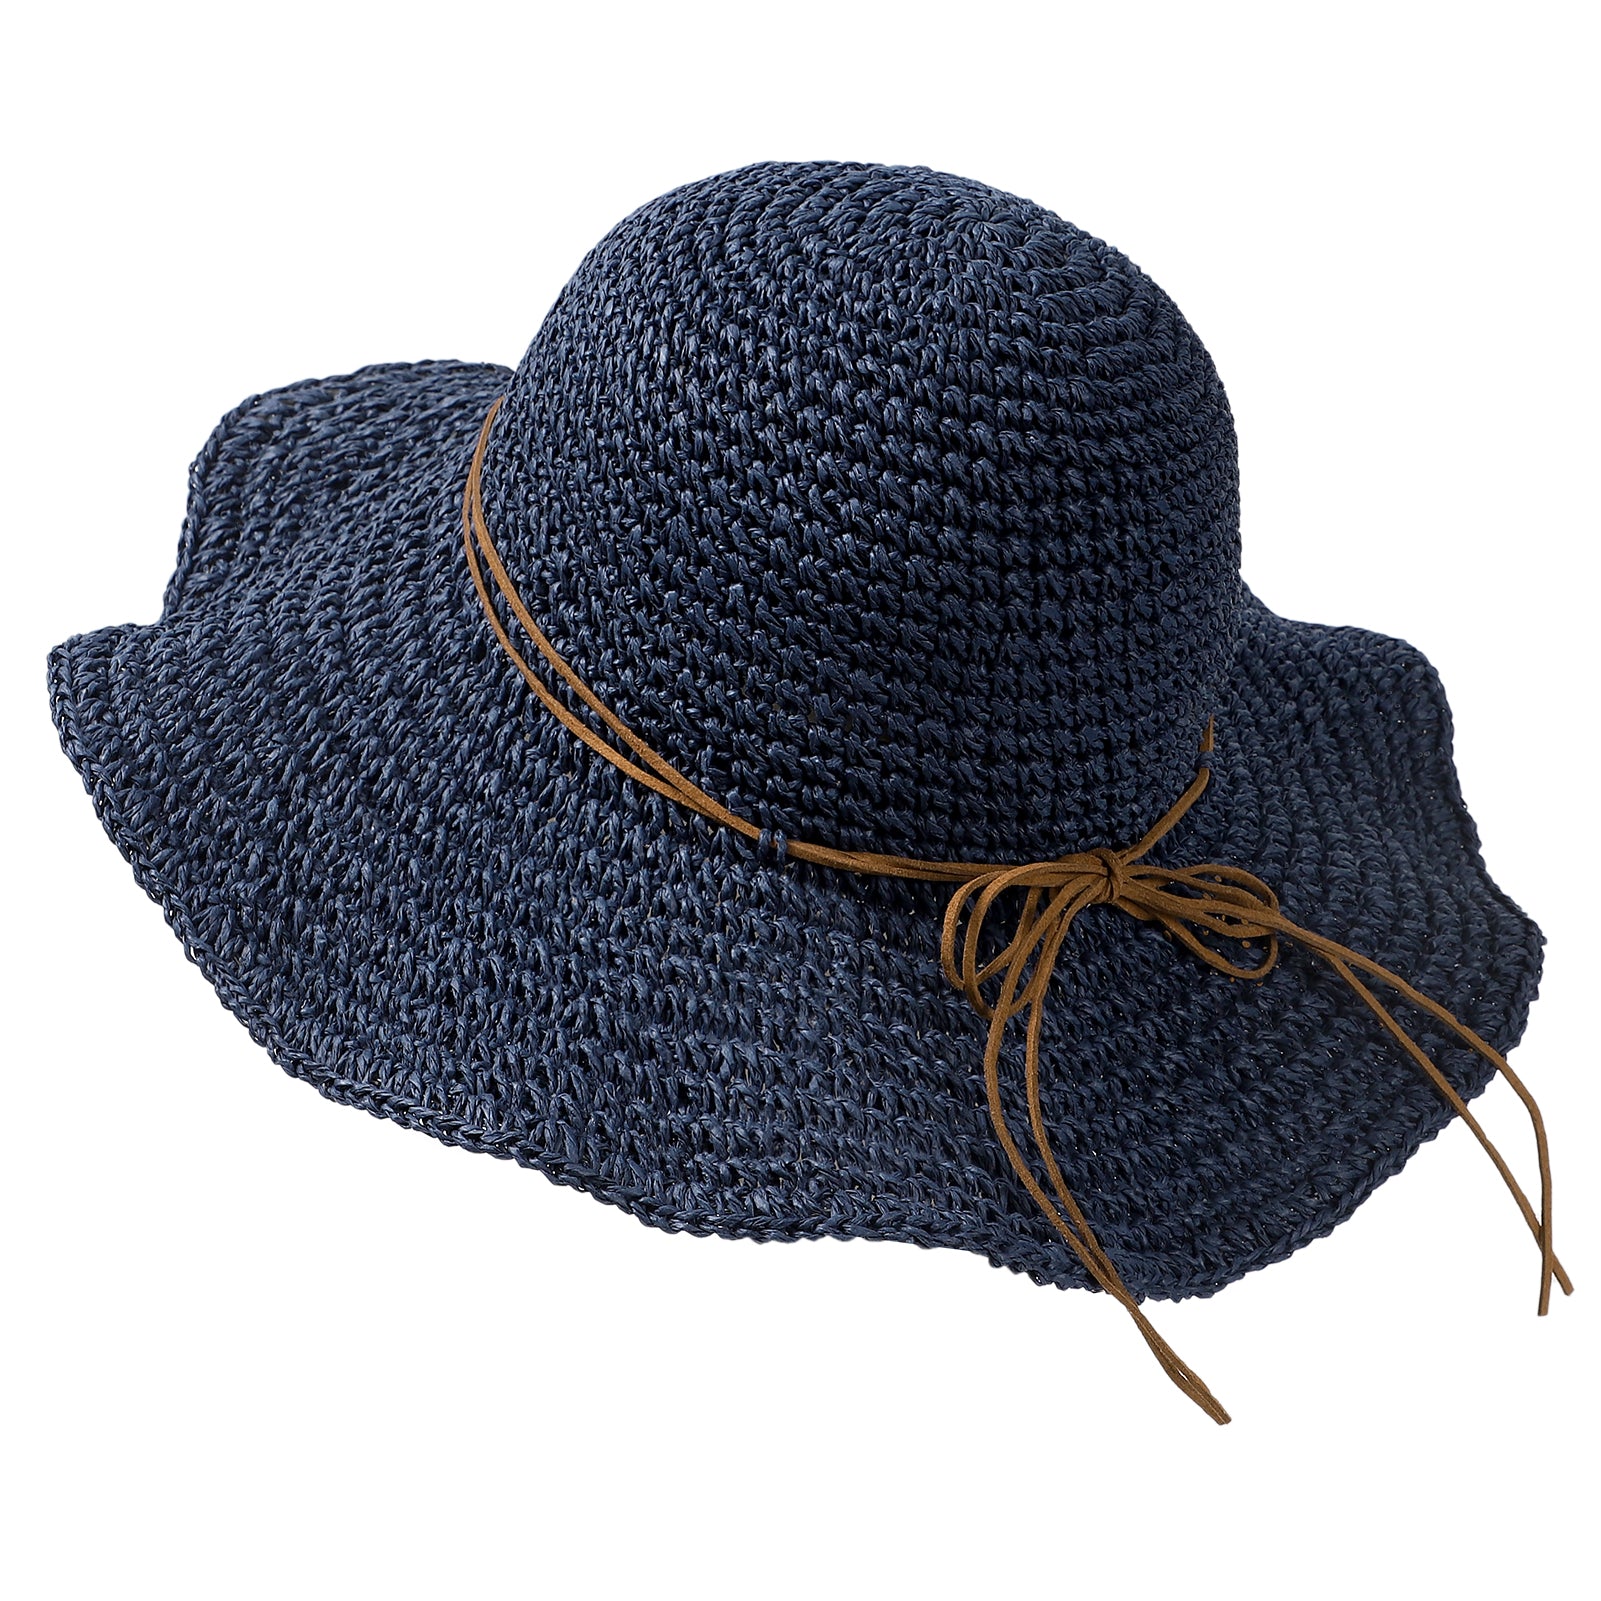 Floppy Beach Straw Sun Hat